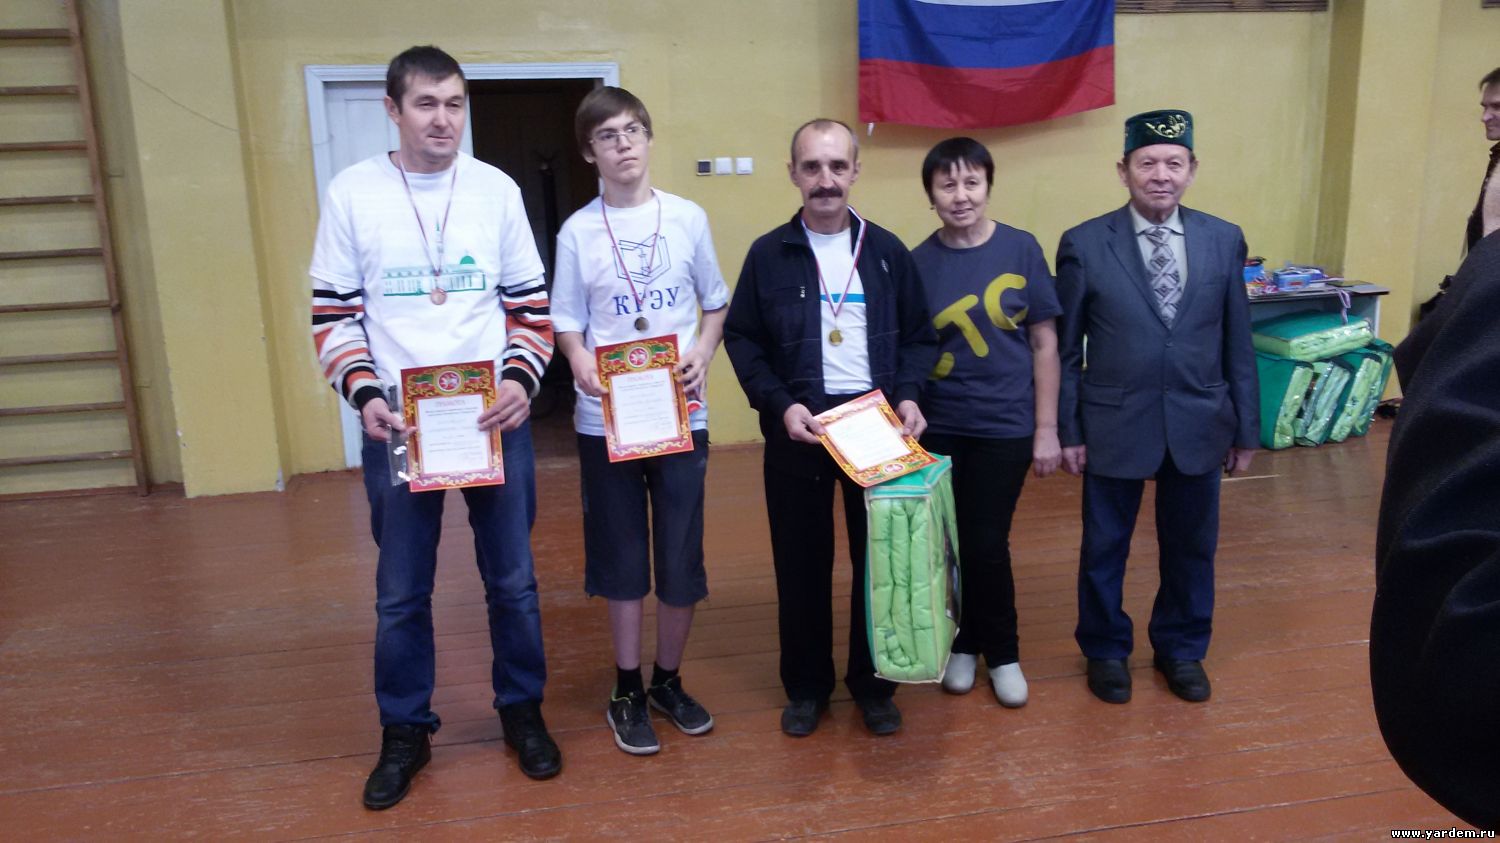 В Казани прошла городская спартакиада для инвалидов под патронажем фонда "Ярдэм"